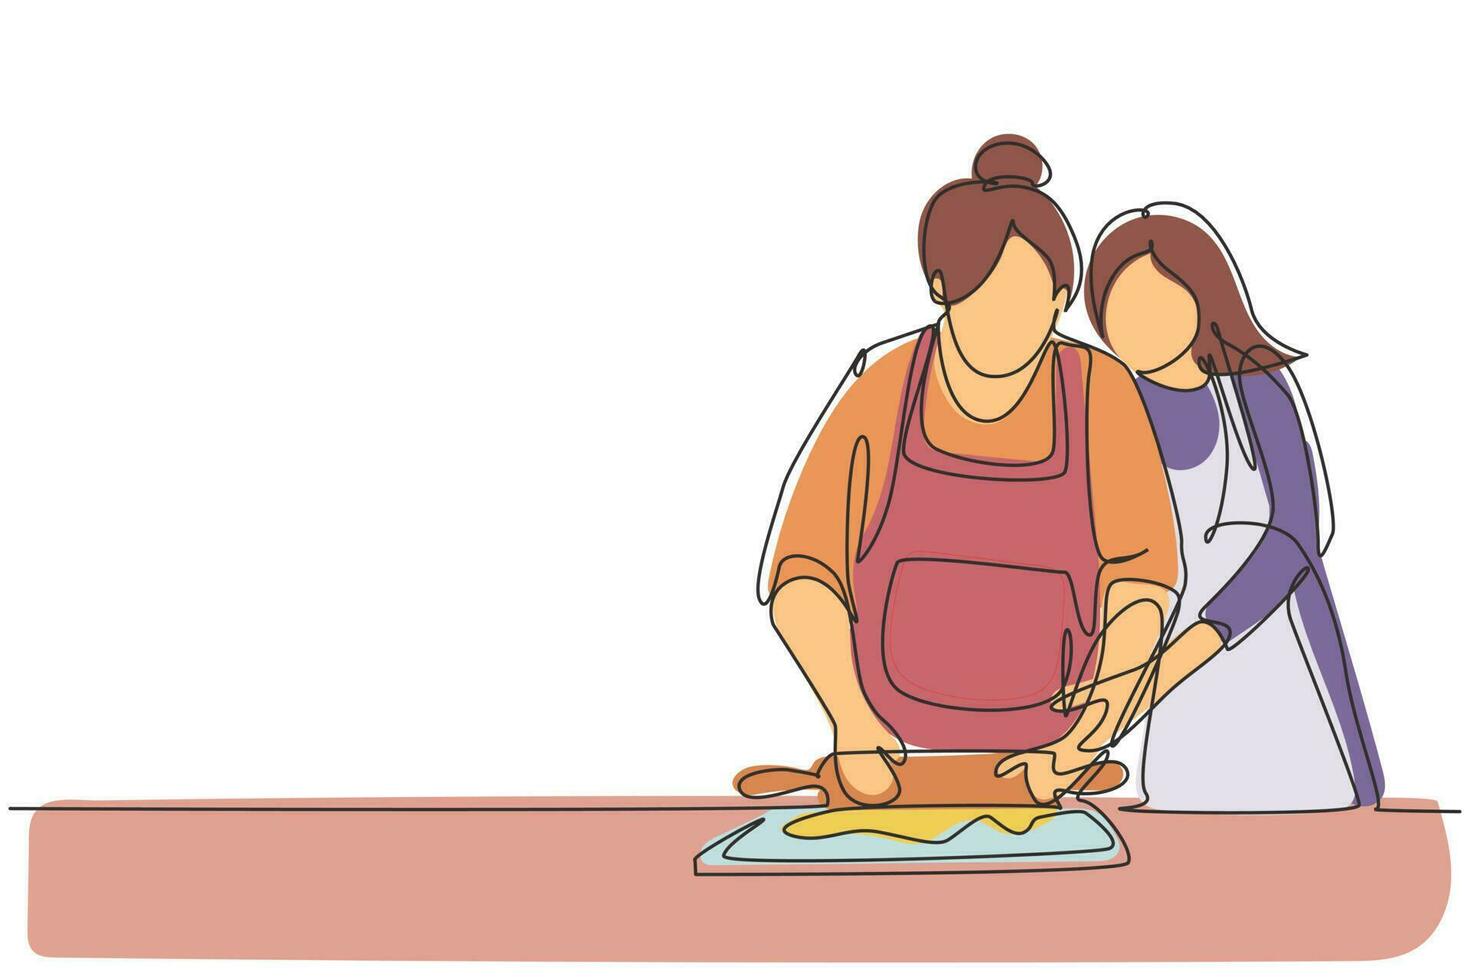 enkele doorlopende lijntekening gelukkige familie grootmoeder schoonmoeder en schoondochter dochter koken in de keuken, deeg kneden en koekjes bakken. dynamische één regel grafisch ontwerp vectorillustratie vector